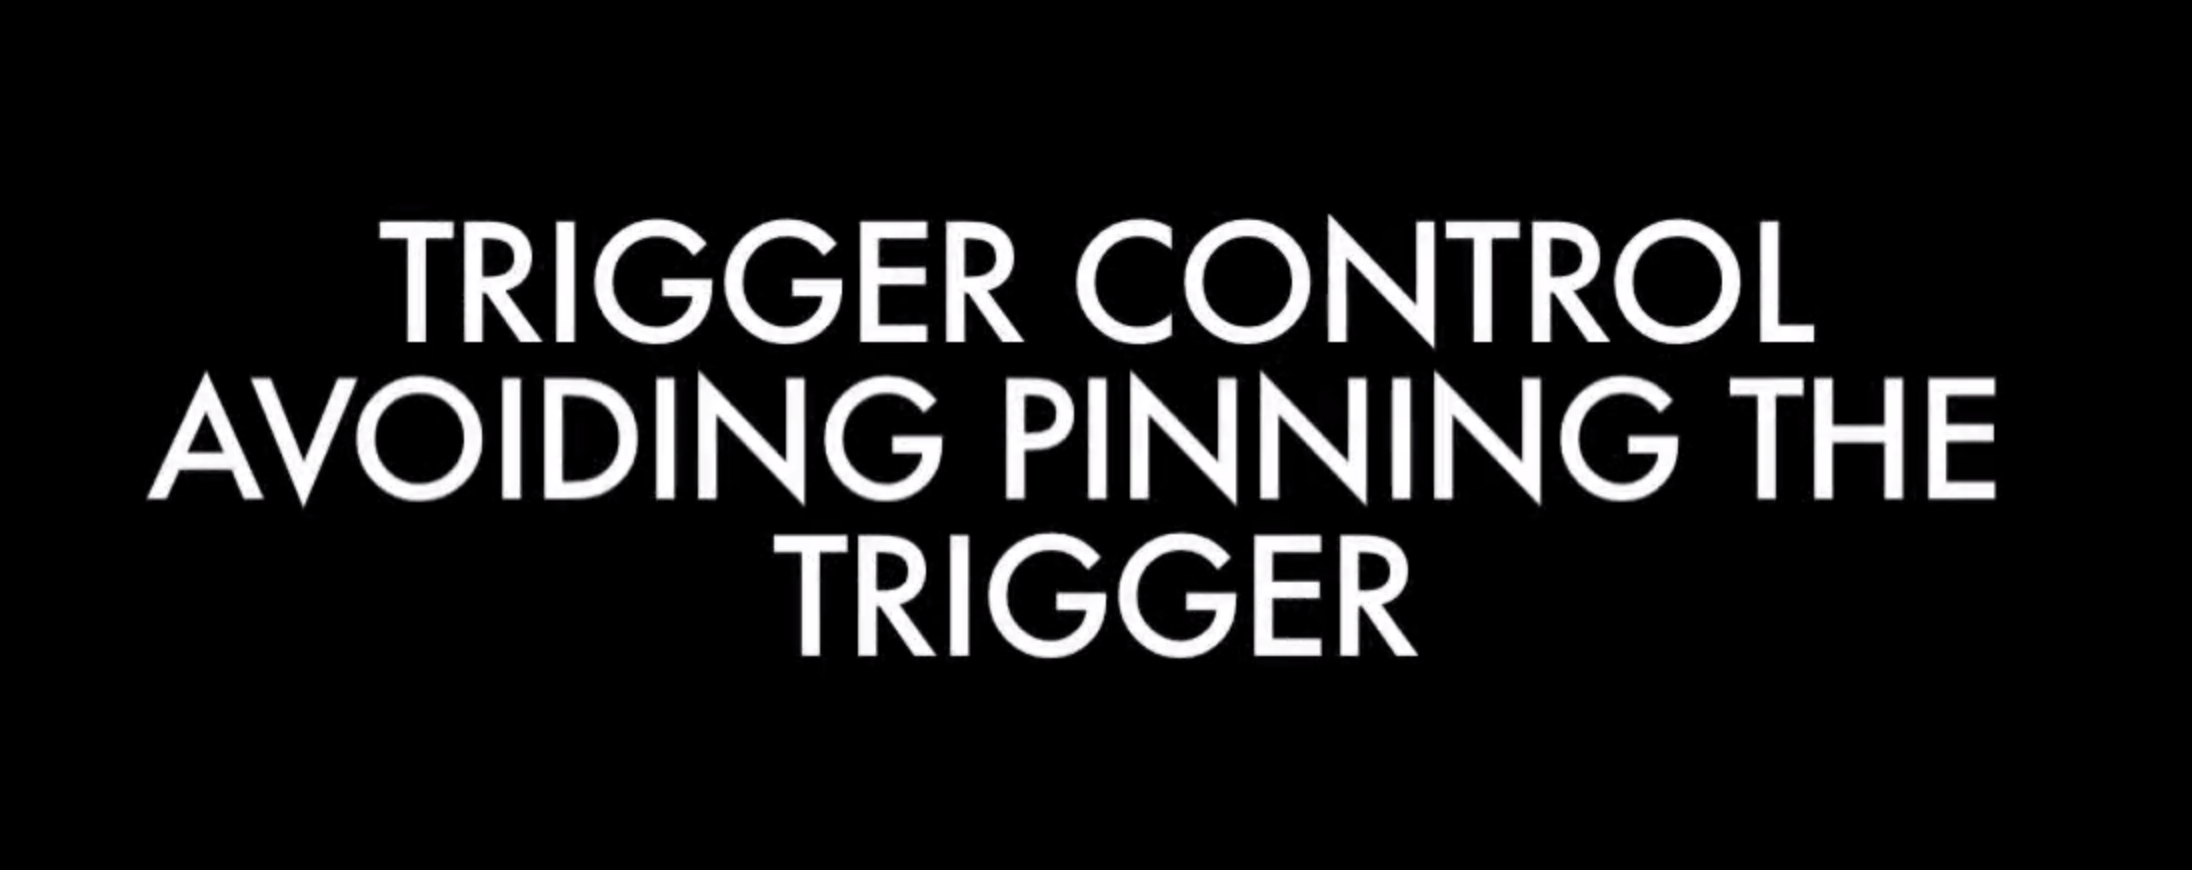 avoid pinning trigger